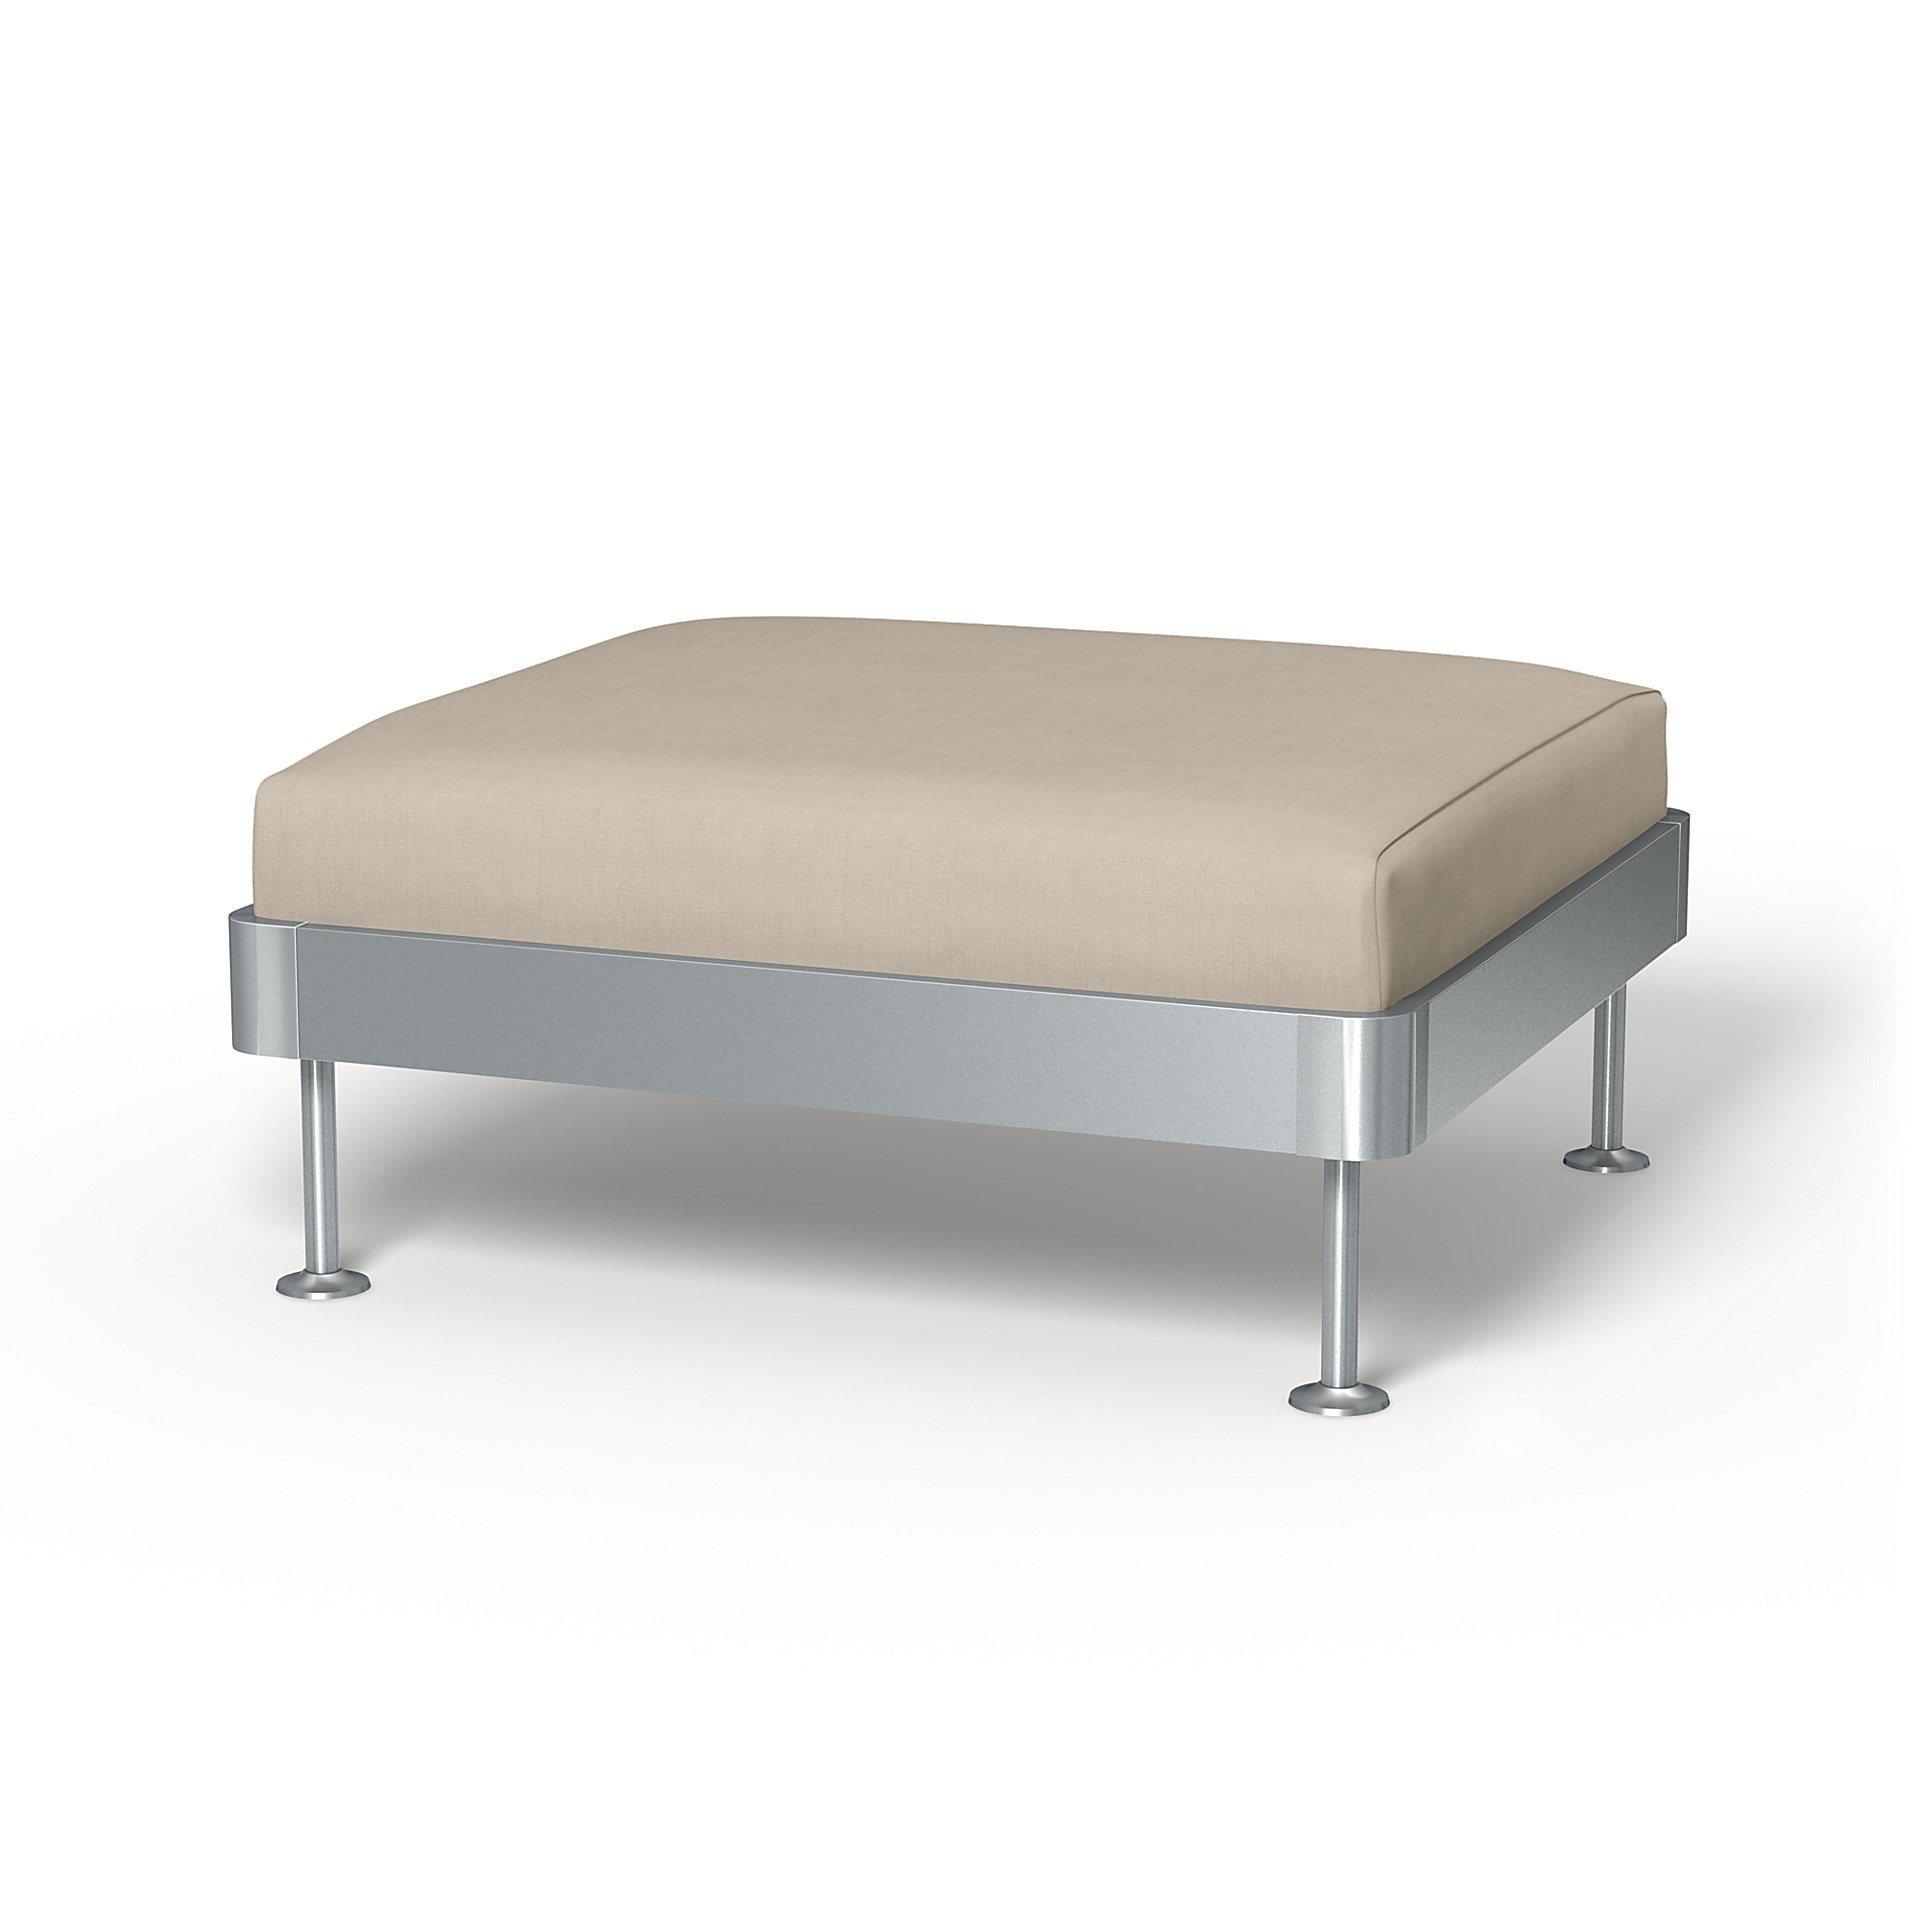 IKEA - Delaktig 1 Seat Platform Cover, Parchment, Linen - Bemz